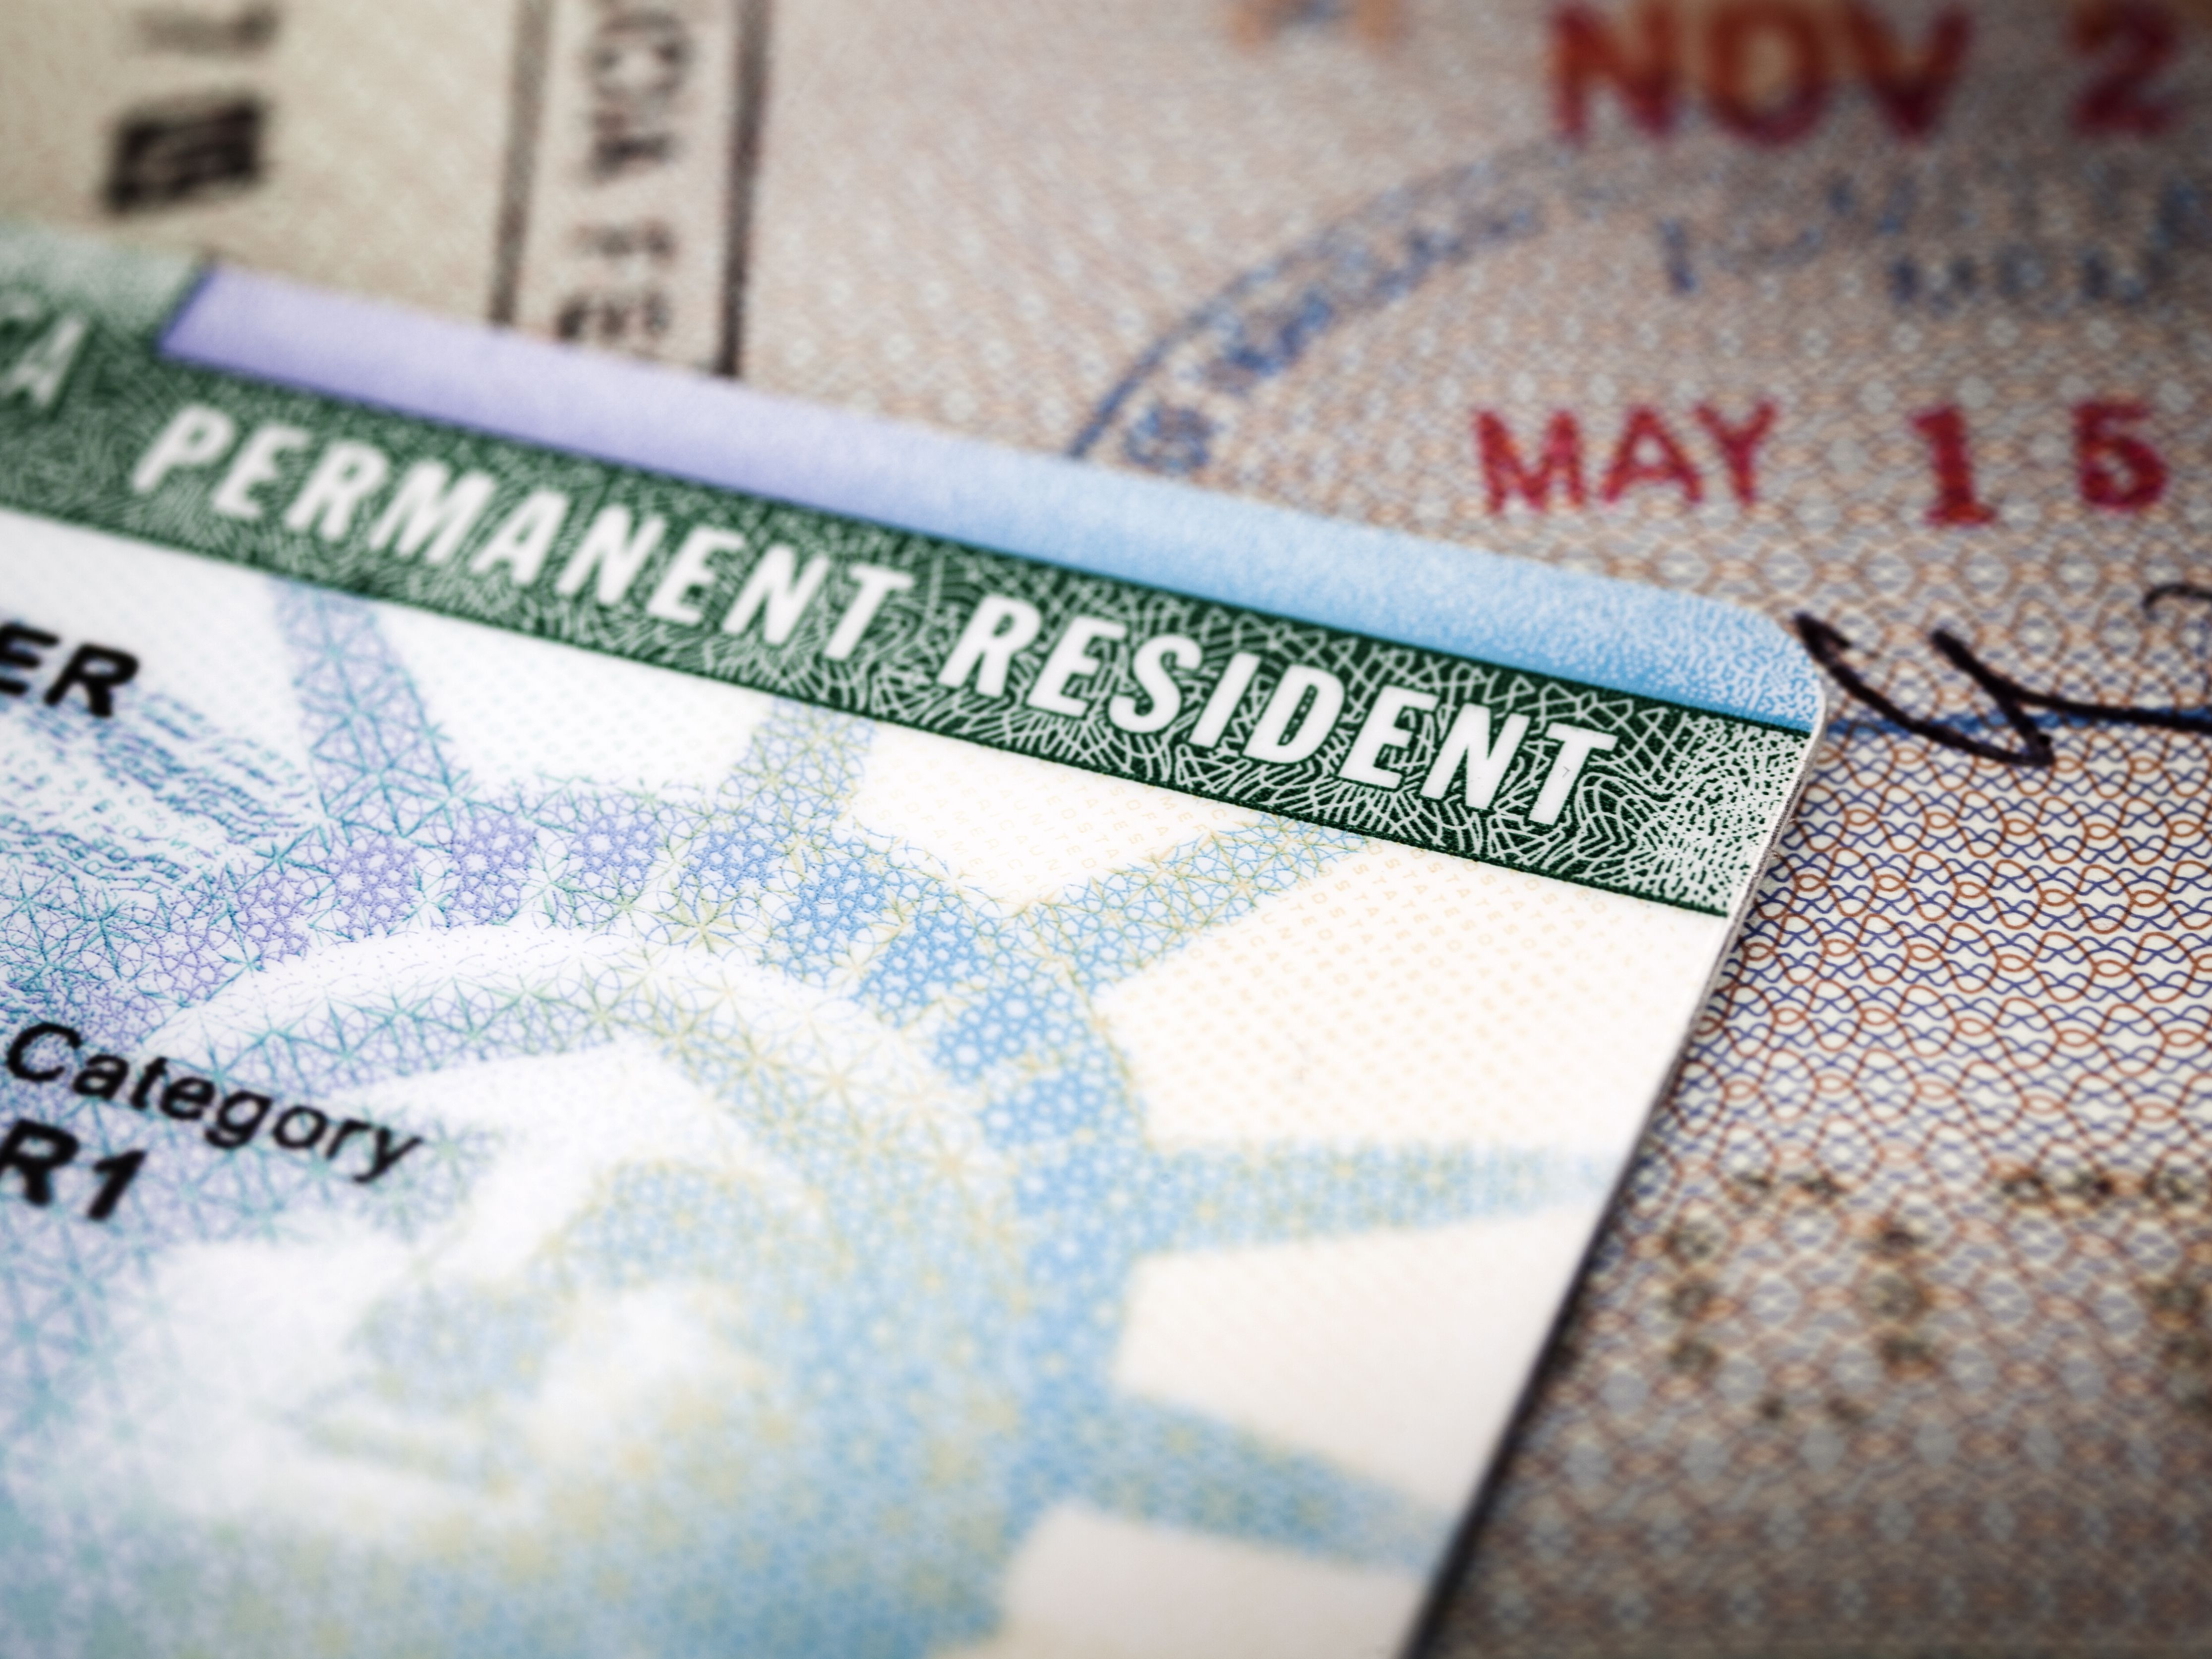 Lotería de visas: ¿participar puede afectarme si luego solicito una visa de turismo a Estados Unidos?